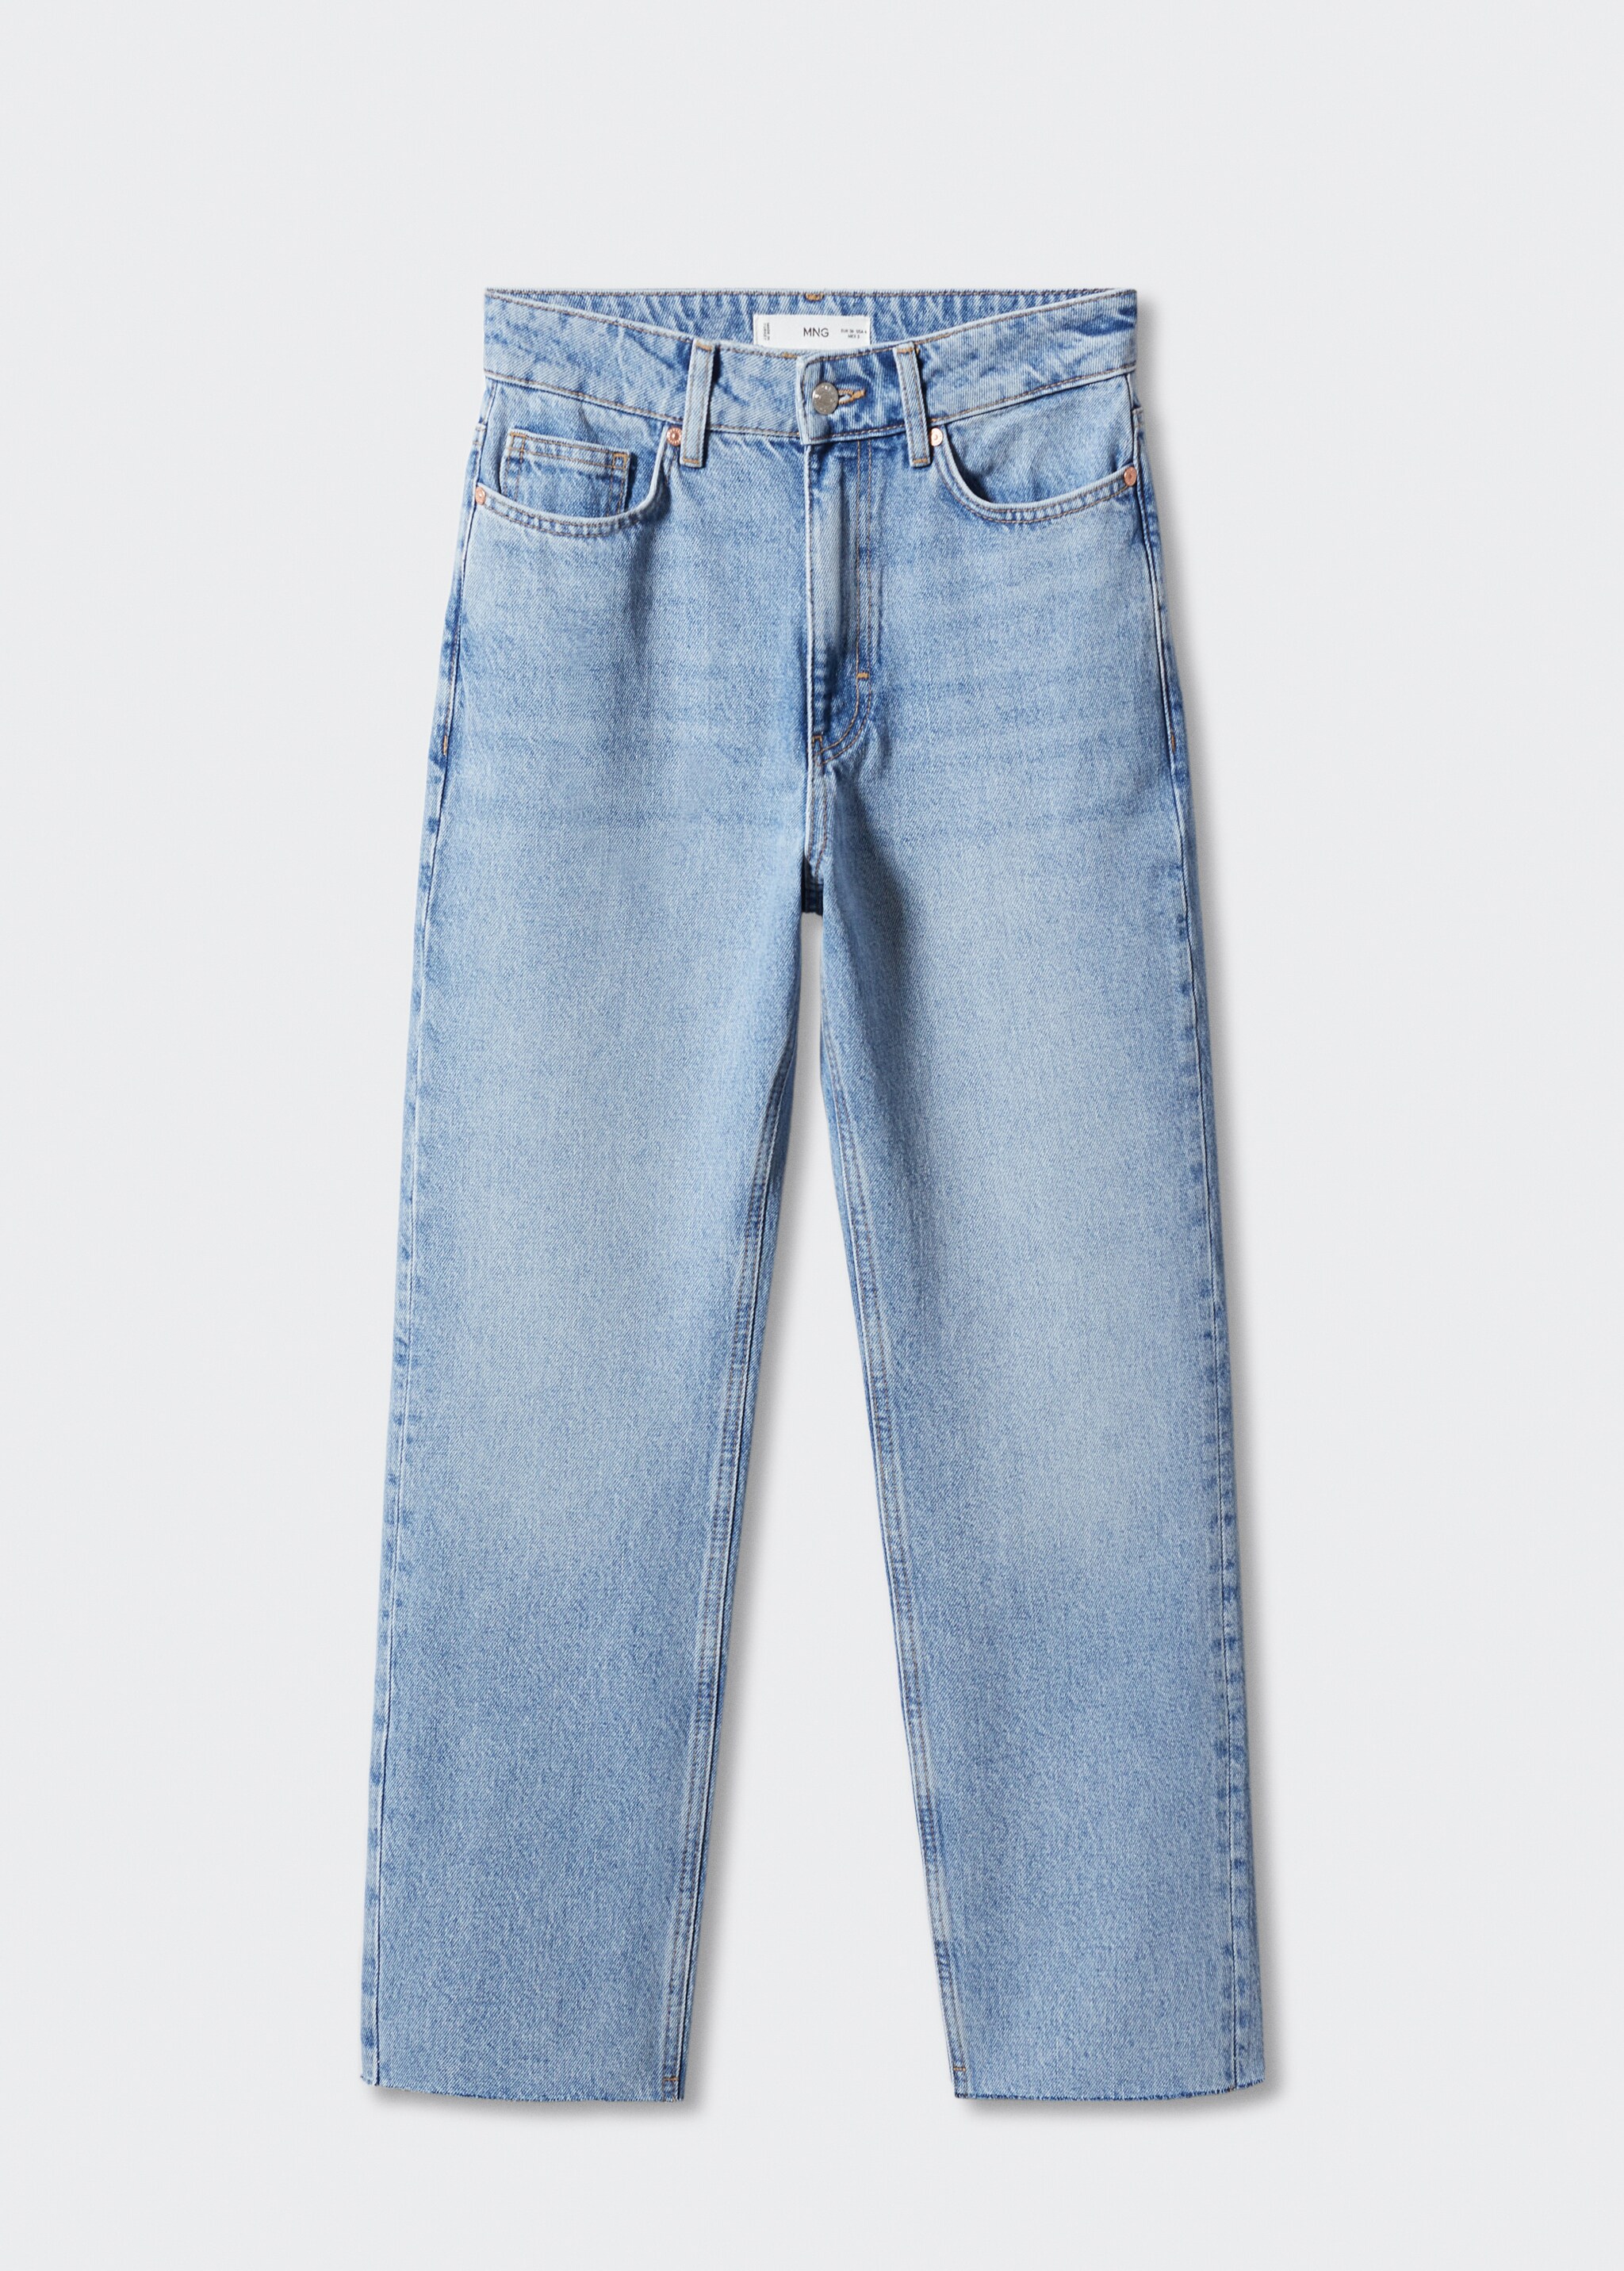 Rovné džíny s vysokým pasem - Zboží bez modelu